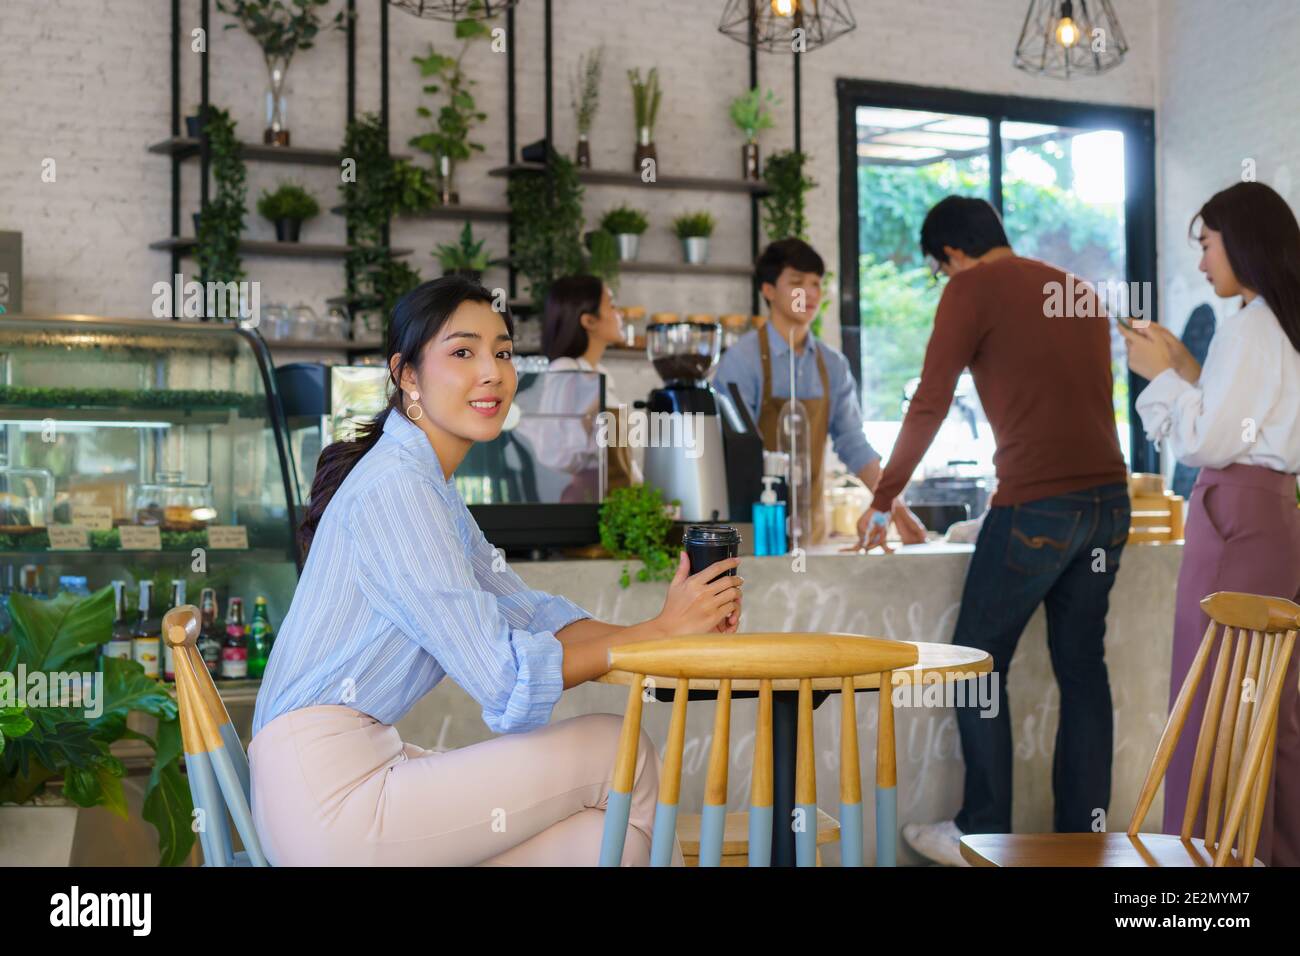 Donna asiatica seduta in caffetteria e sentendosi felice mentre beve il caffè e un'altra gente accoda ordinare la bevanda con il barista. Foto Stock